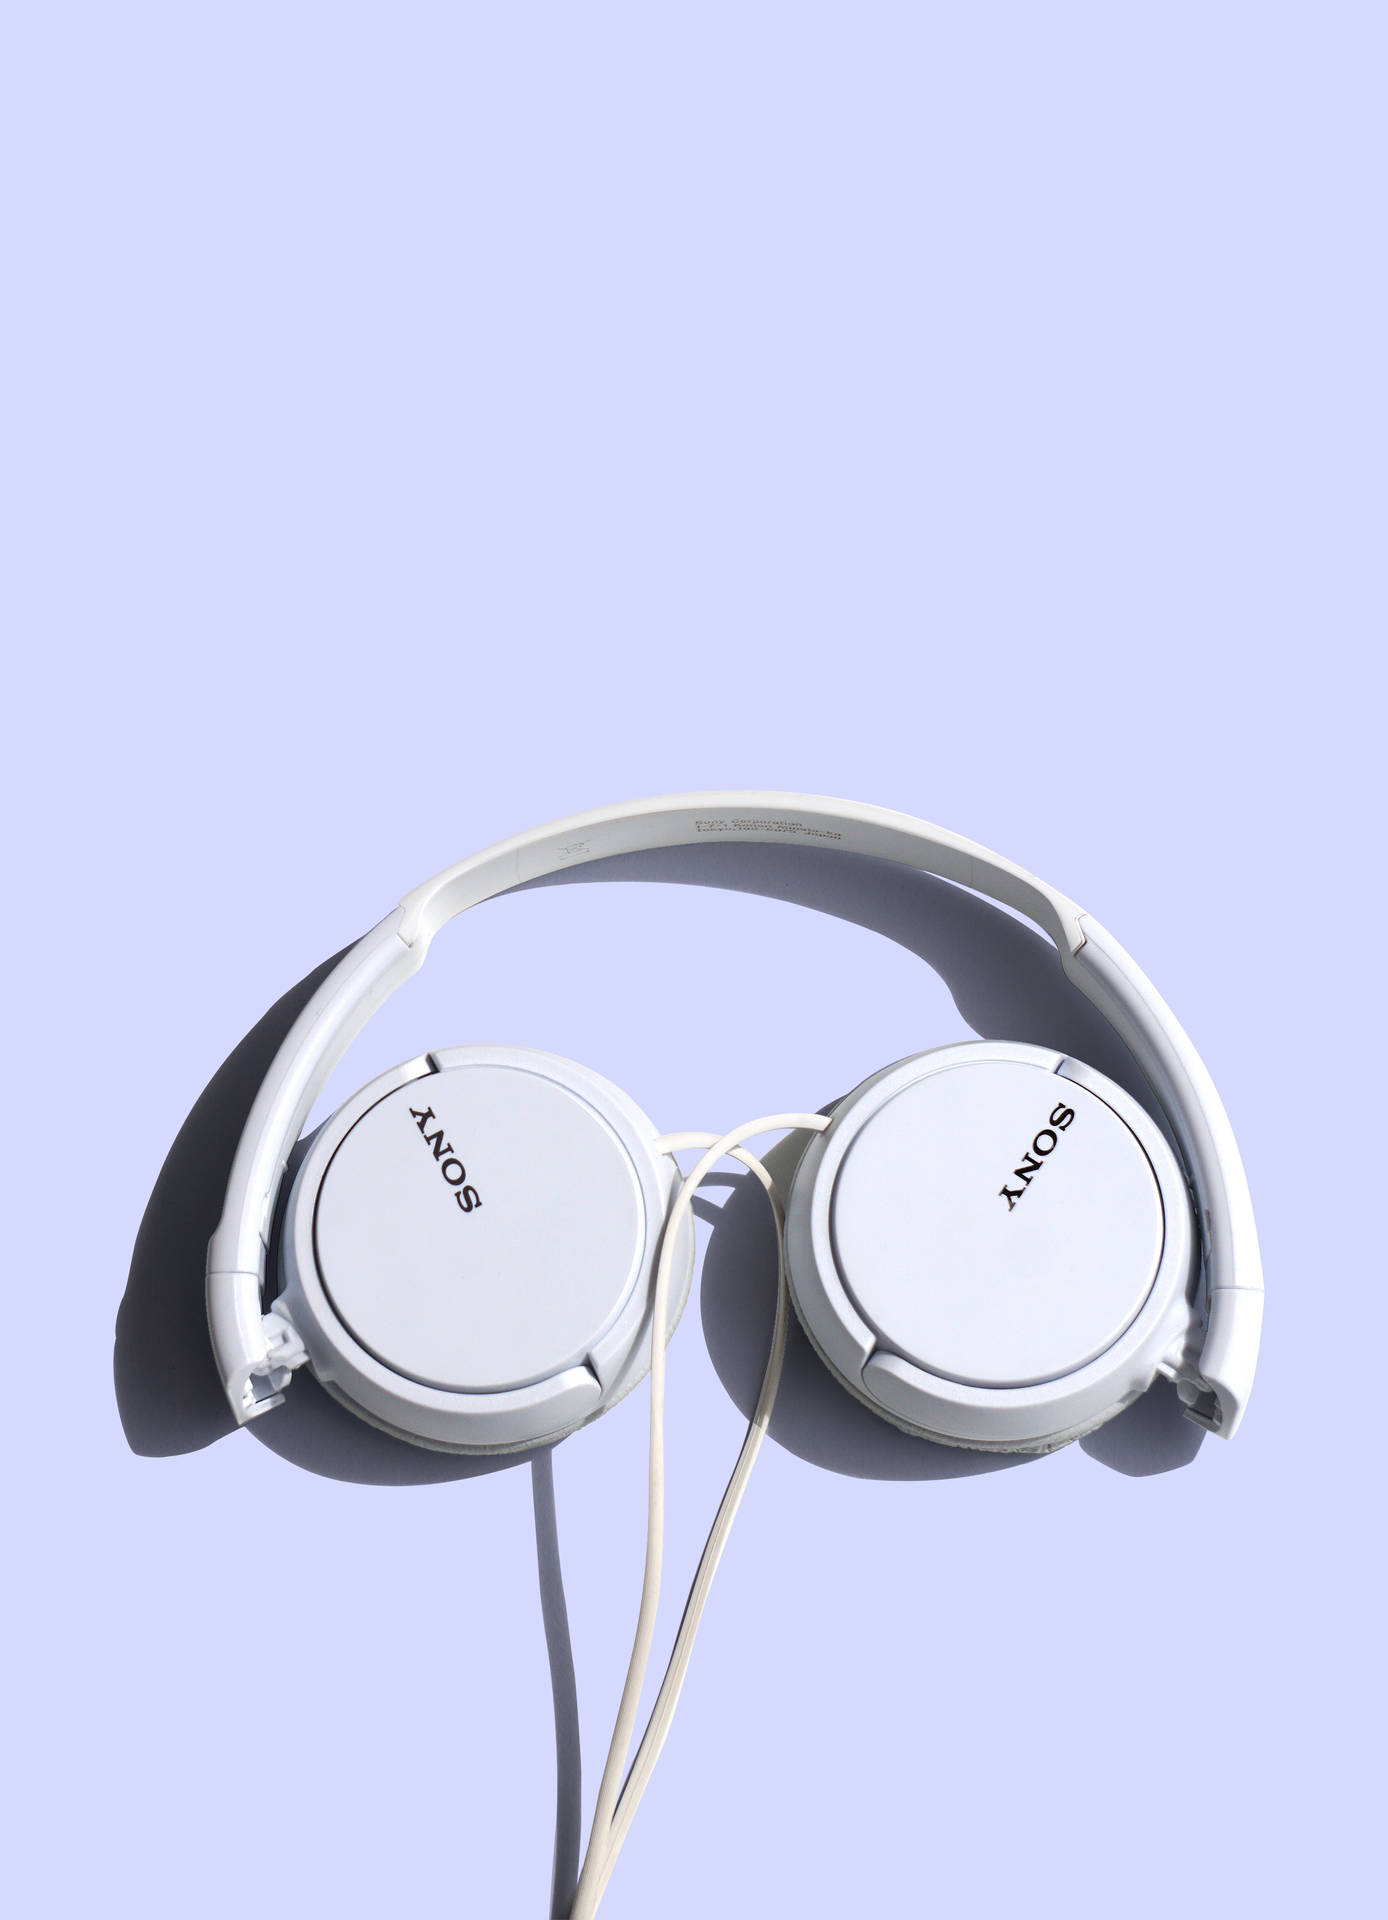 Sony White Headphones Background